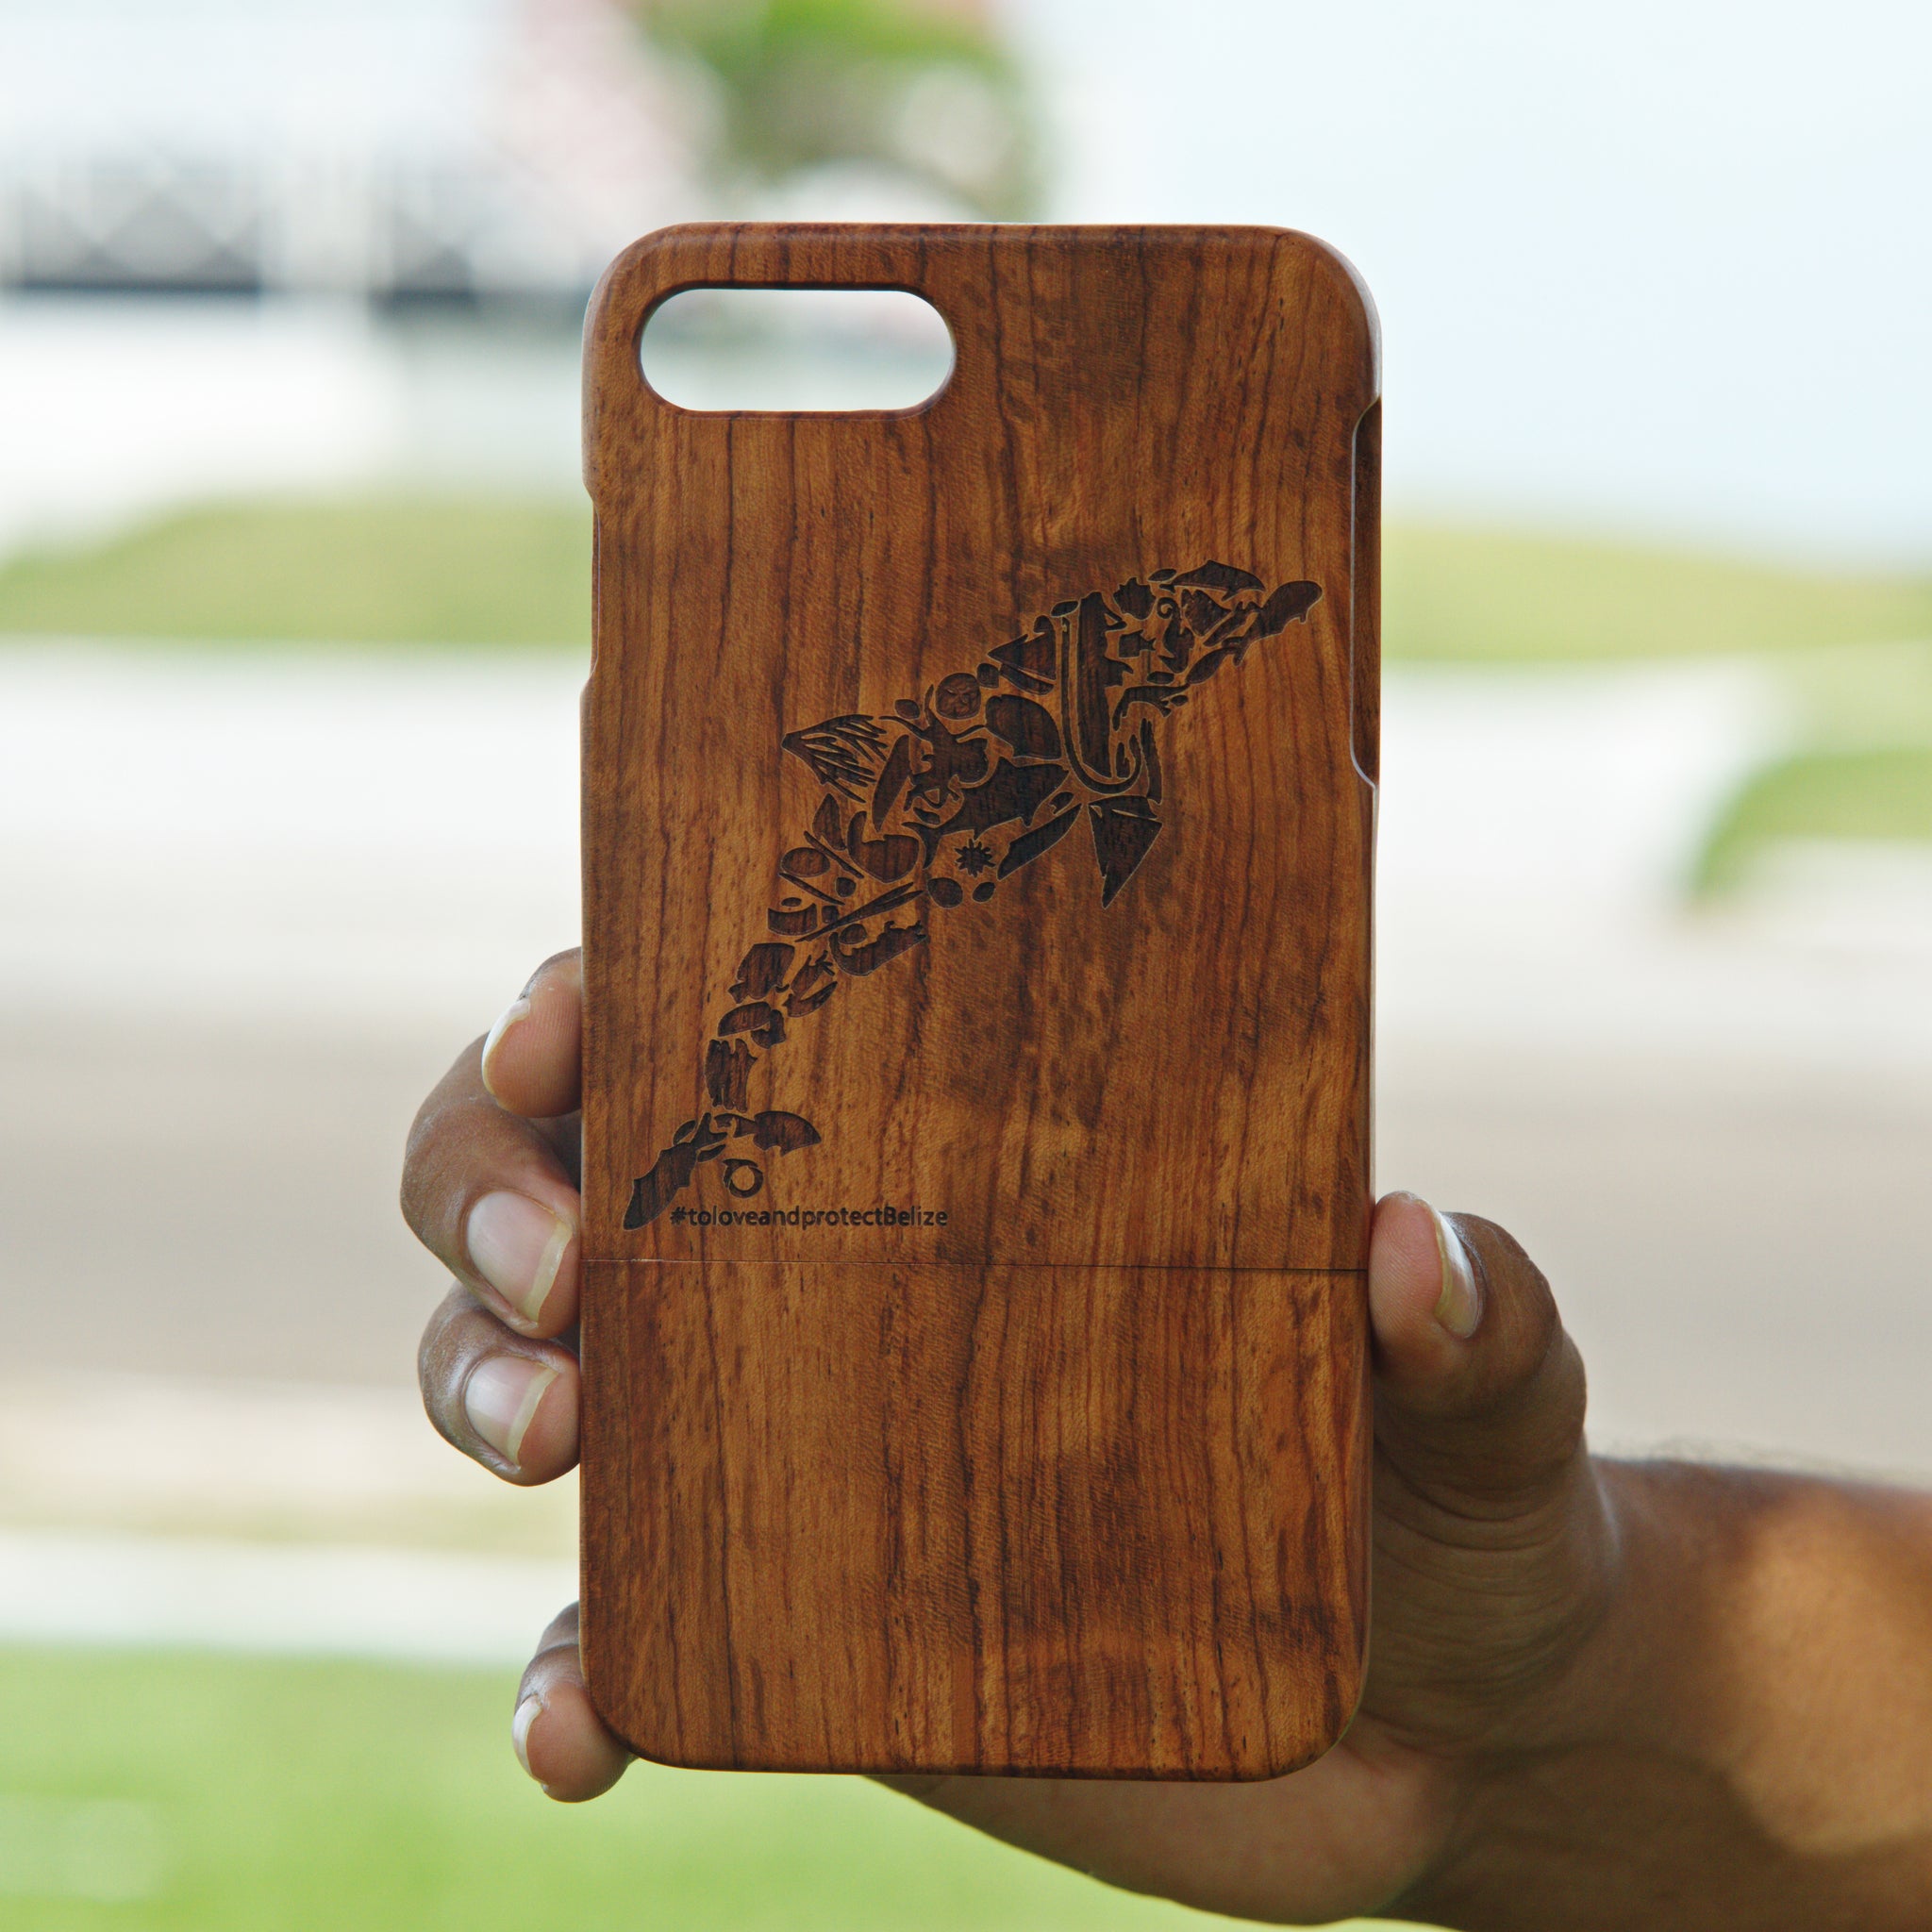 iPhone 7+/8+ (Oceana Belize design)